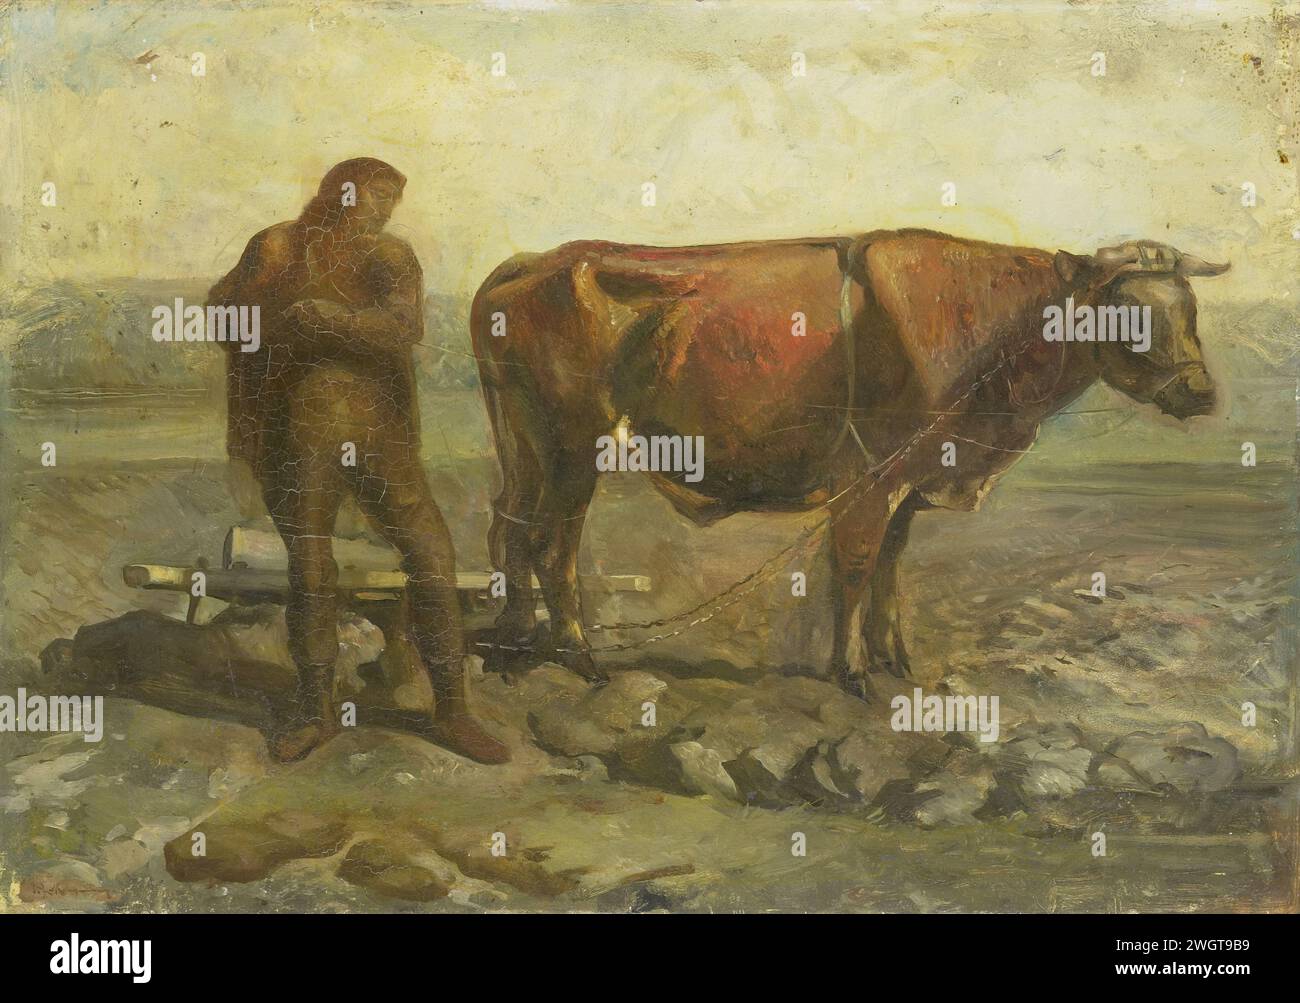 Plowing Peasant, Willem van Konijnenburg, um 1905, Gemälde Eines Bauern, der auf einem Felde steht, das mit Felsen bedeckt ist, neben einem Ochsen, der für ein Team angespannt ist. Bereich. Pflügen von Lack (Farbe) ölen. Landwirtschaftliche Geräte: Pflug Stockfoto